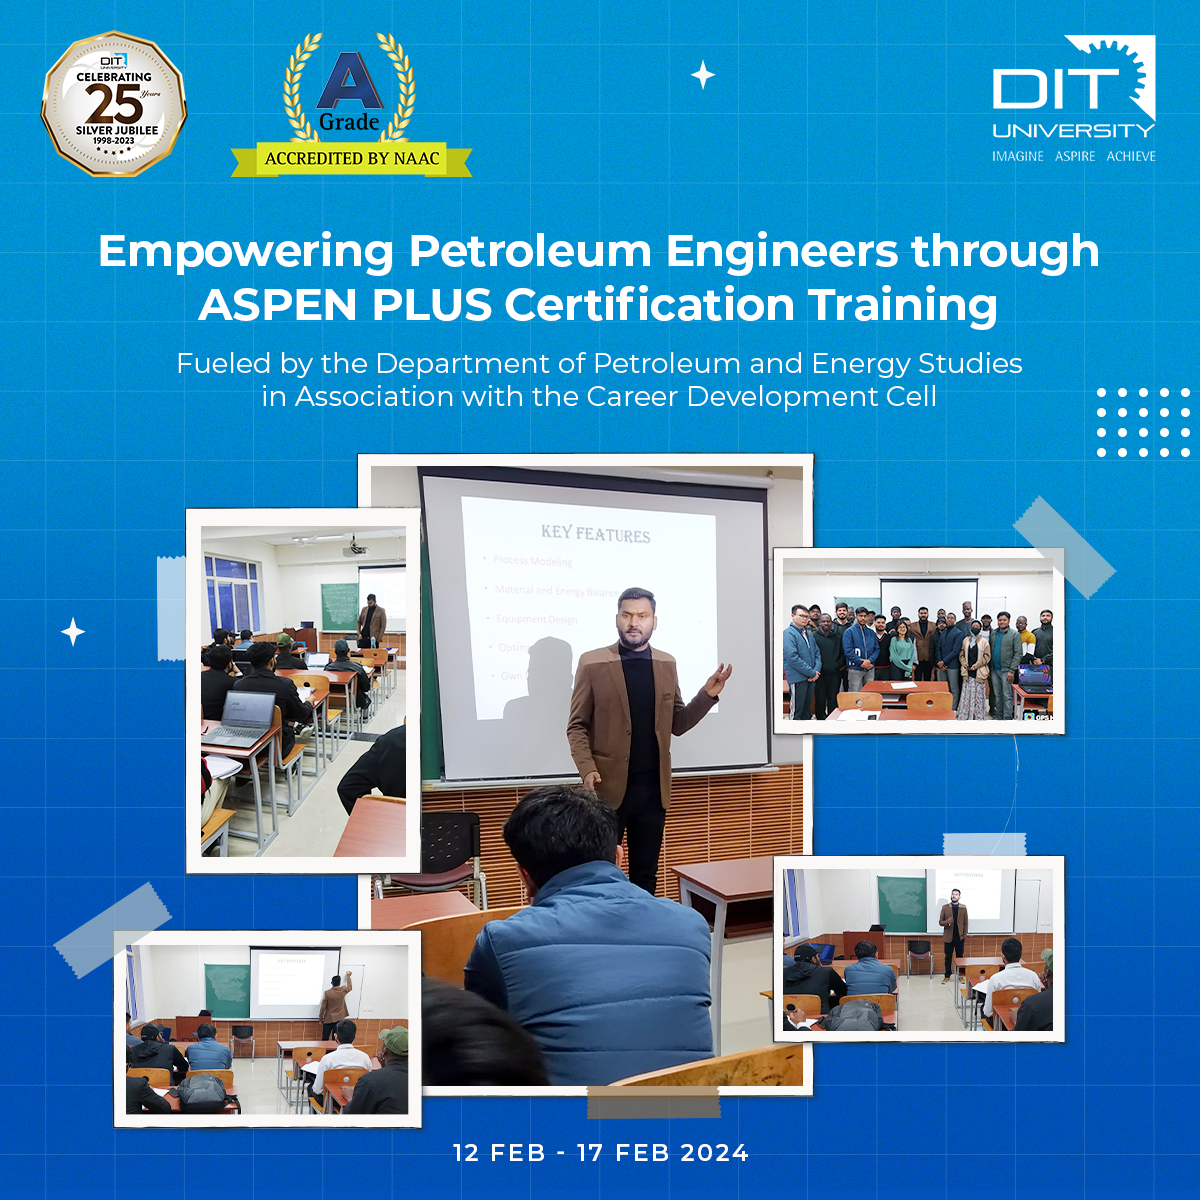 Empowering Petroleum Engineers through ASPEN PLUSE Certification Training